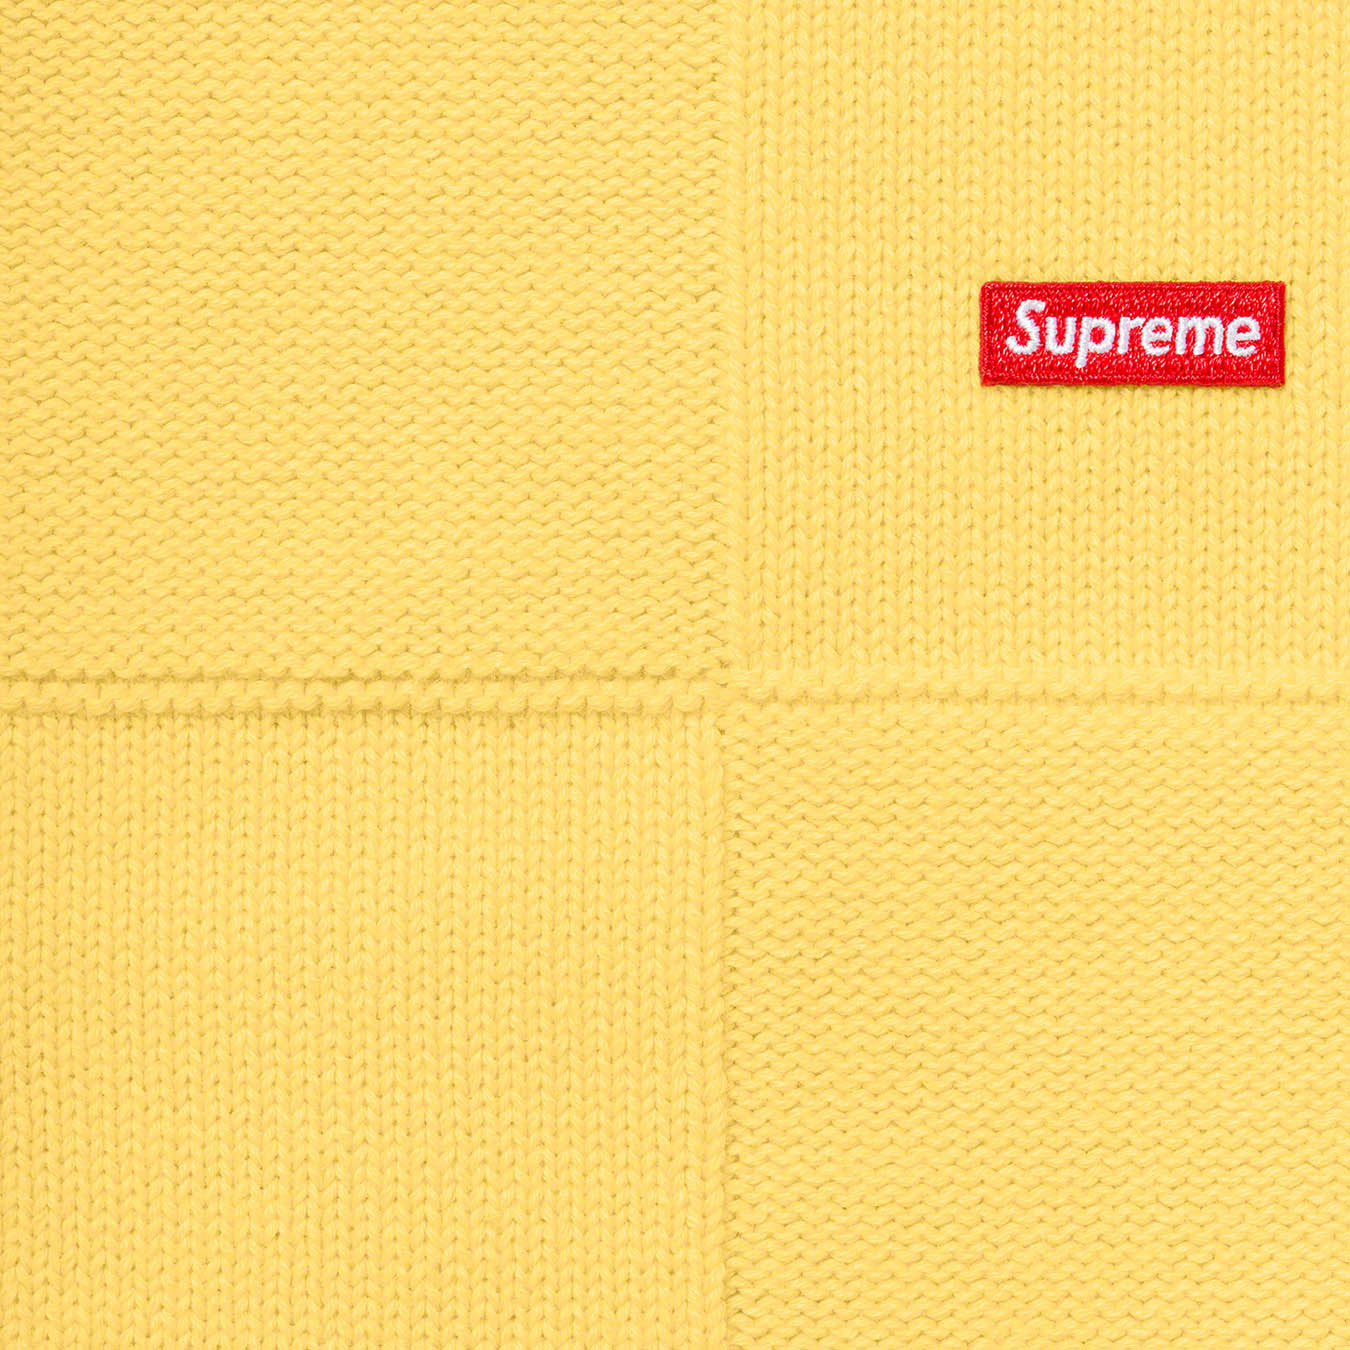 Supreme Tonal Checkerboard Small Box Sweater